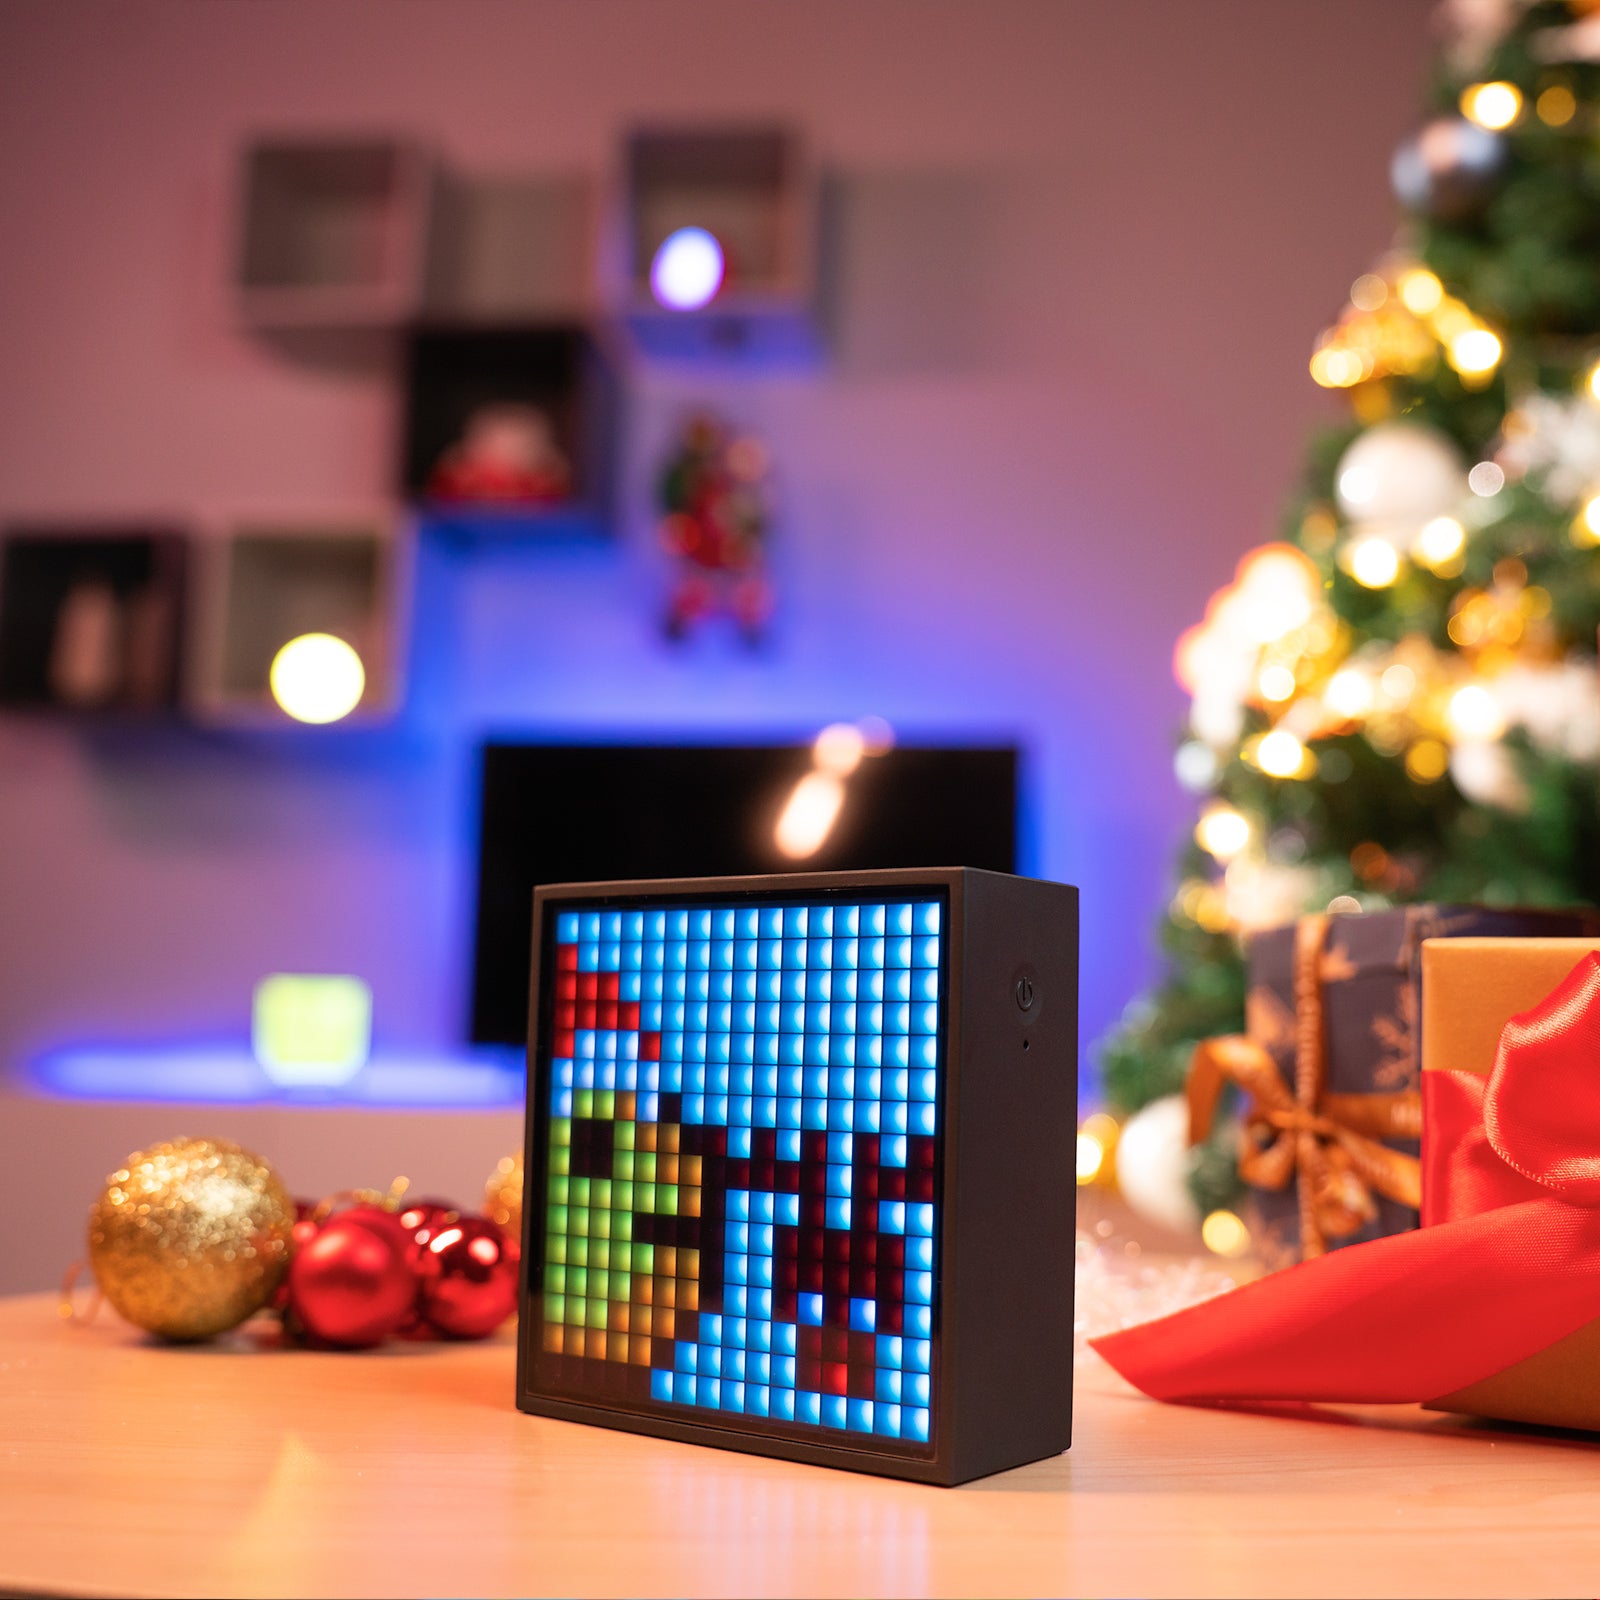 Divoom Timebox-Evo Pixel Art Speaker 16x16 DIY LED Display Wekkerdoos